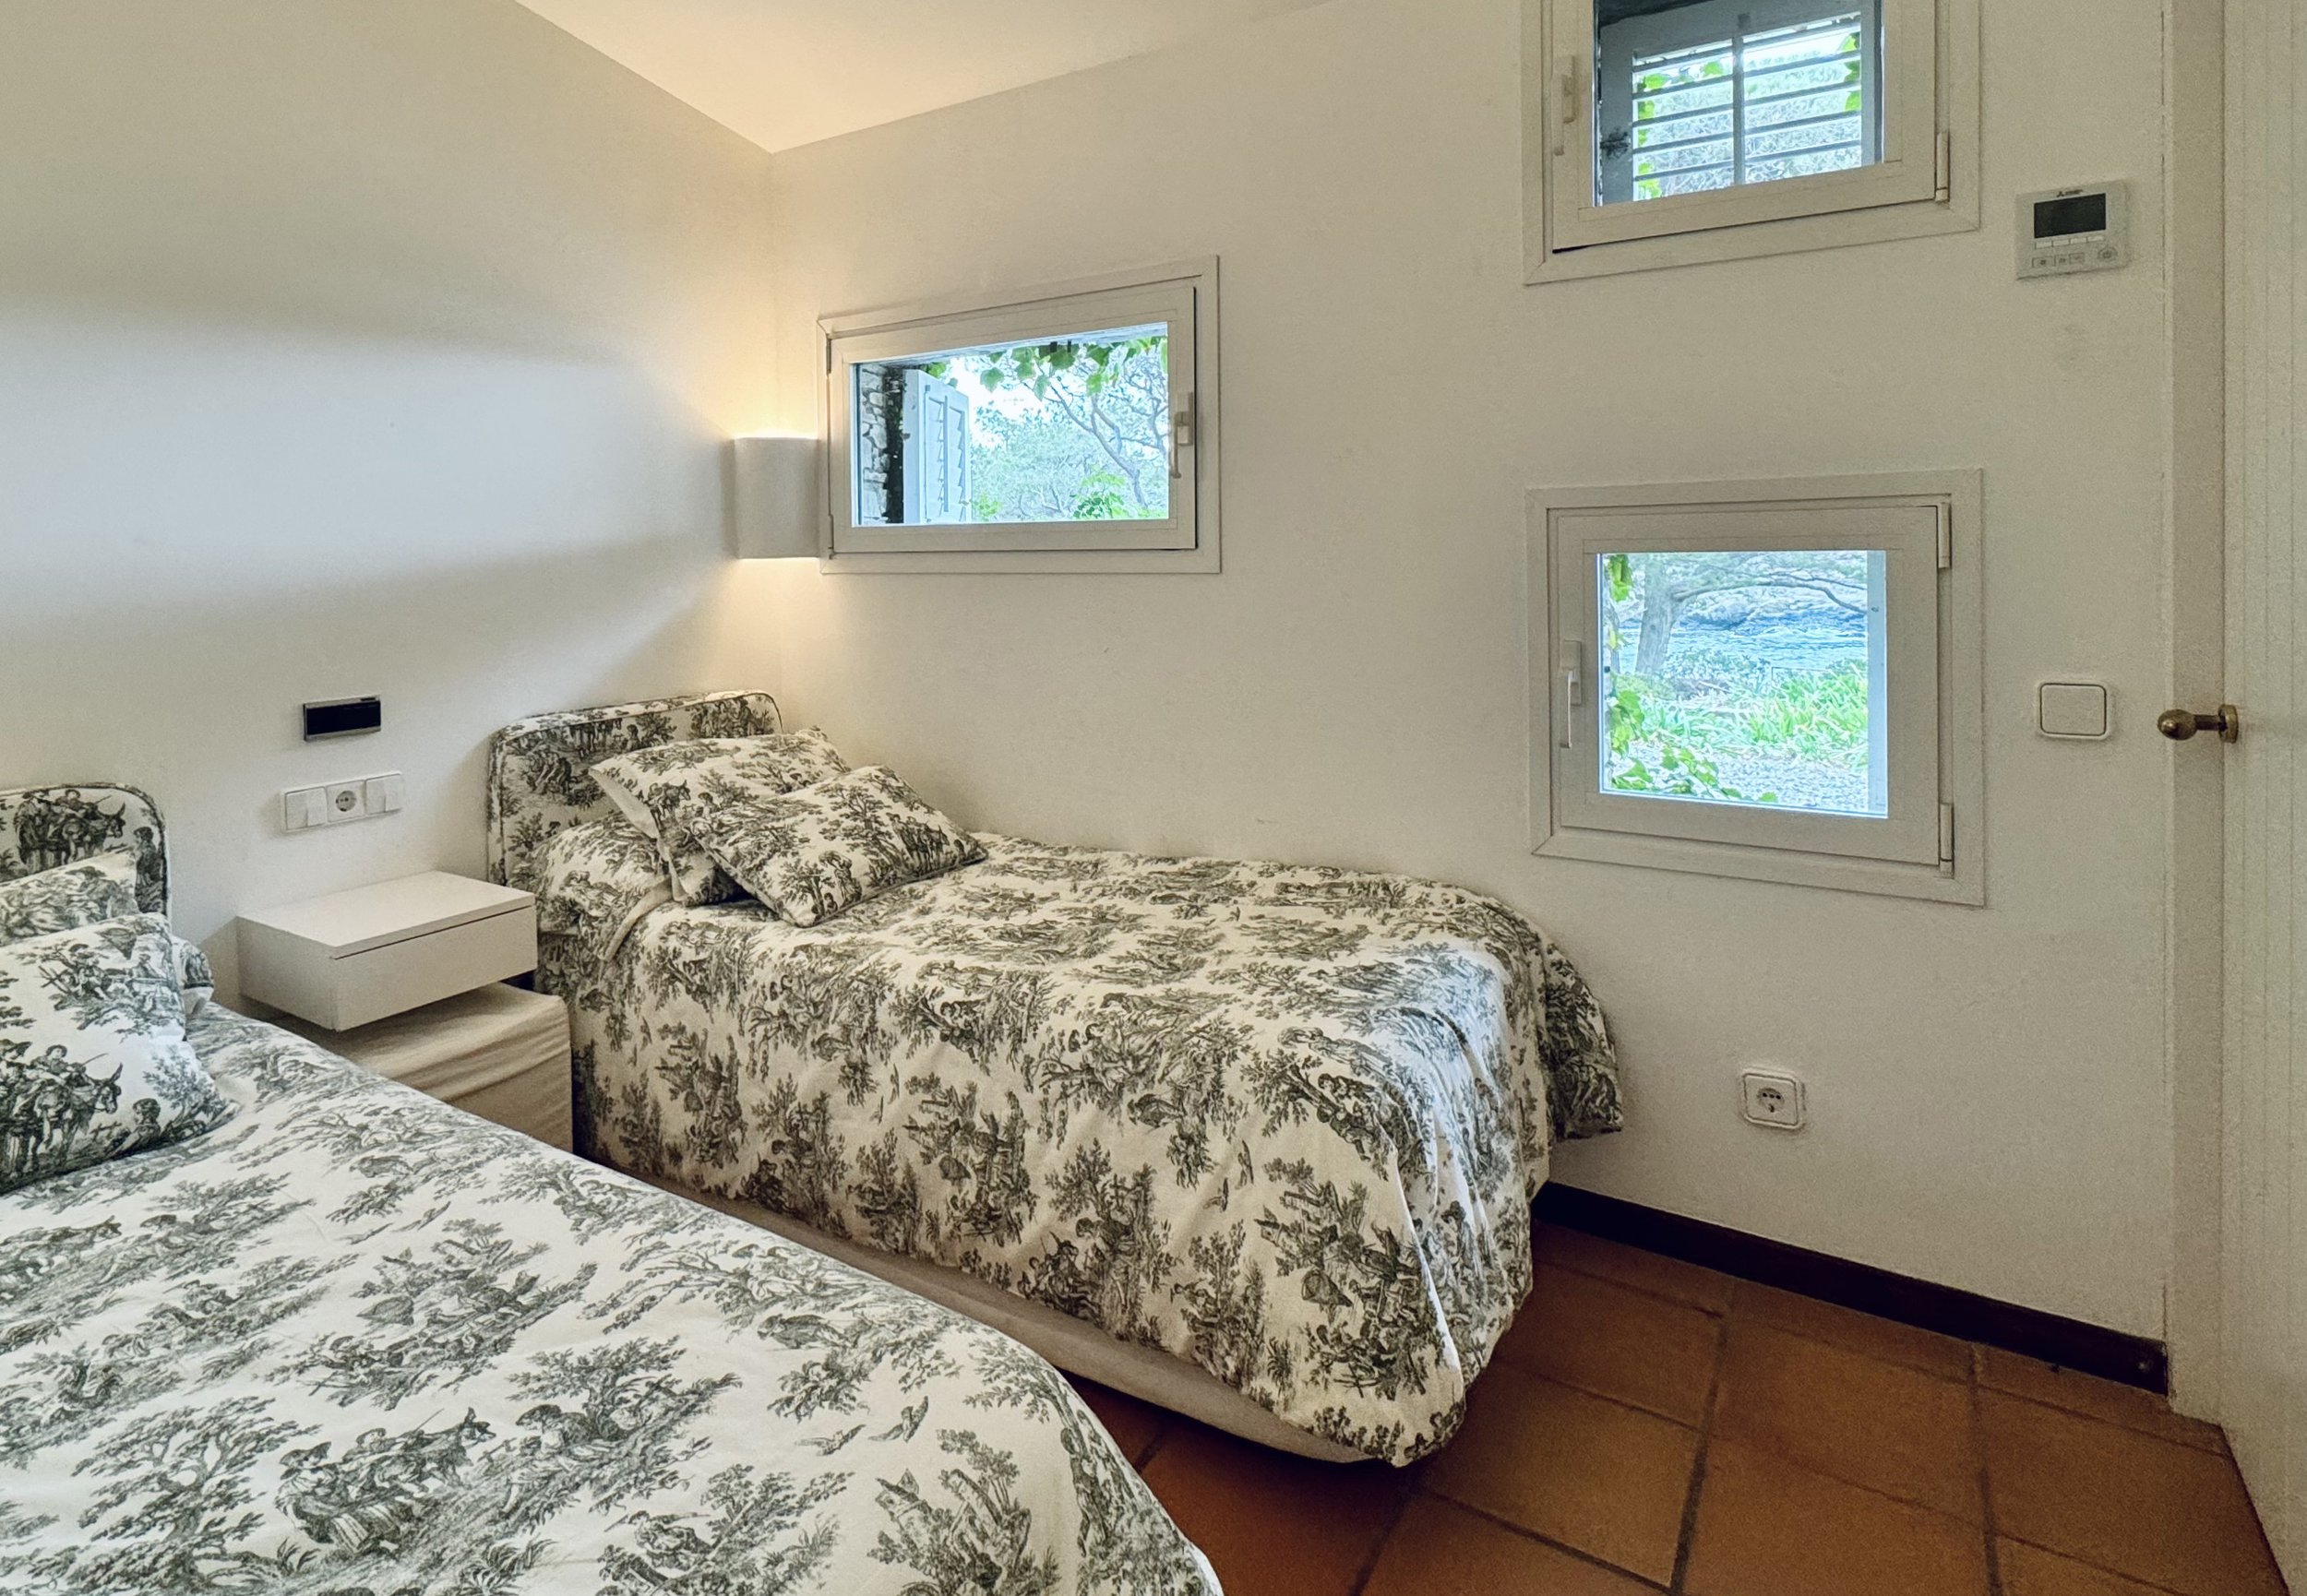 Exceptional villa Homanie with bedroom sea view in Cadaqués